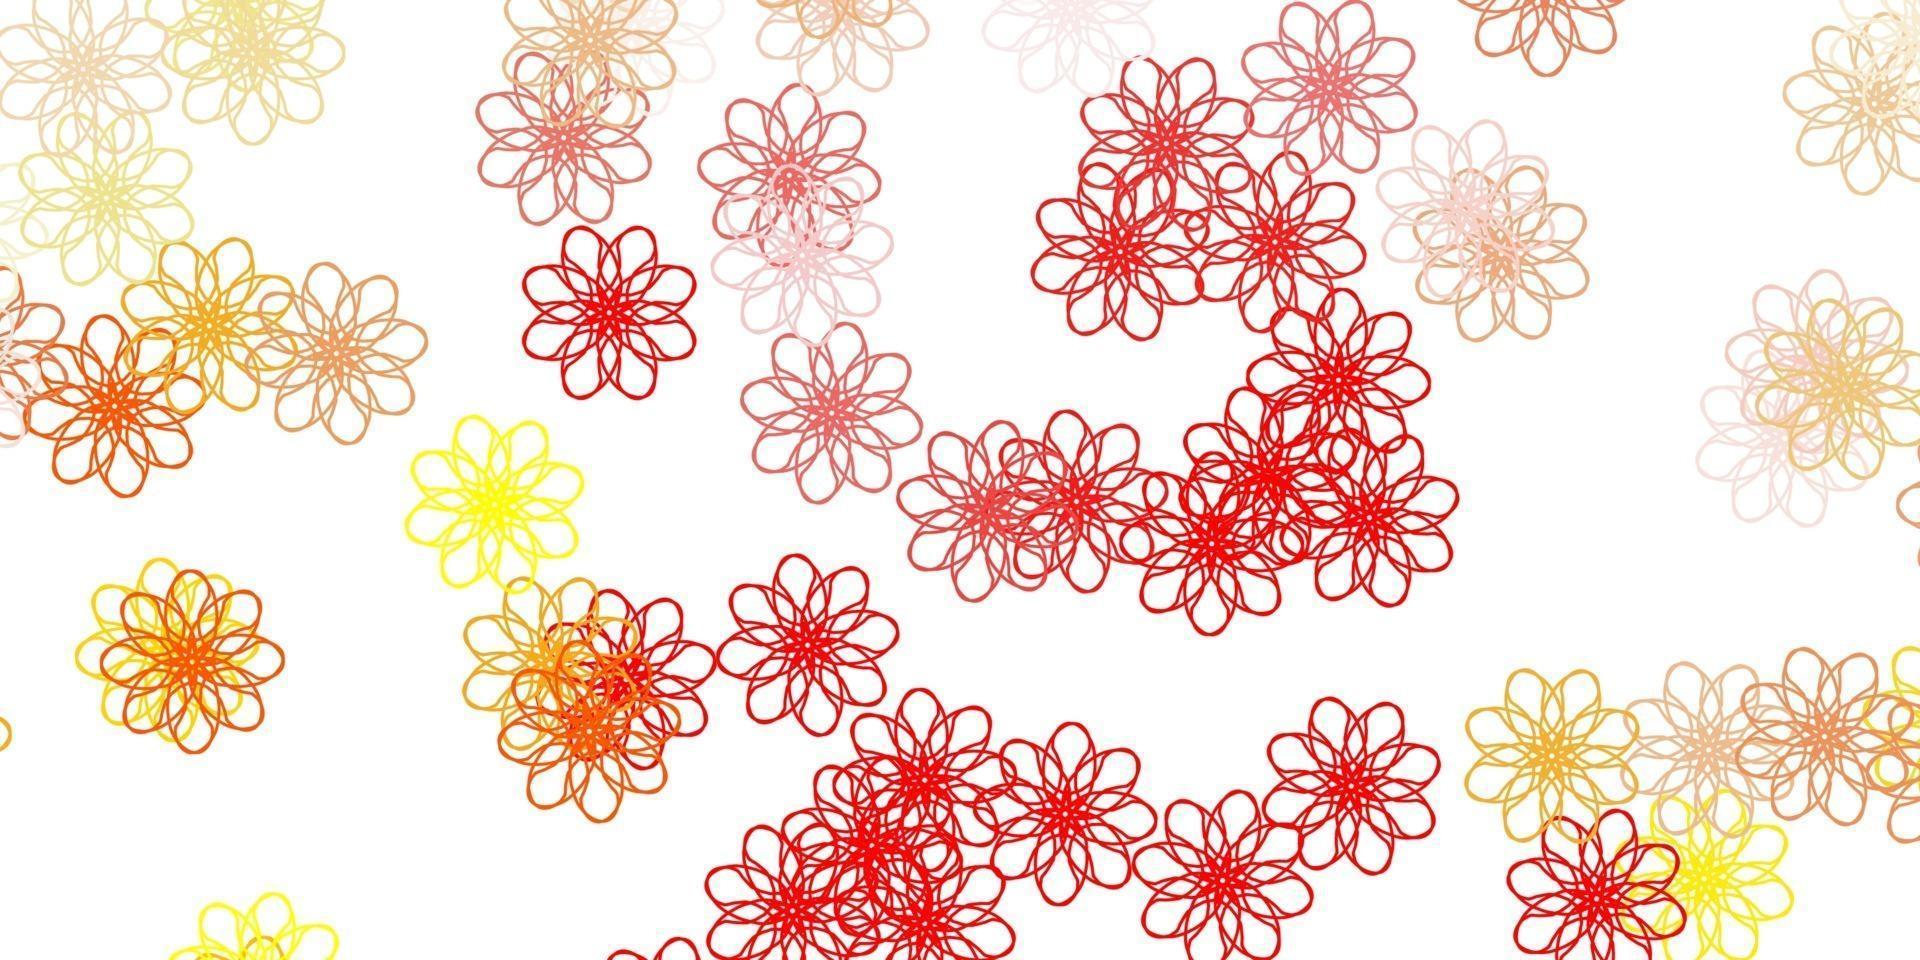 ljusröd, gul vektorgrafikmall med blommor. vektor